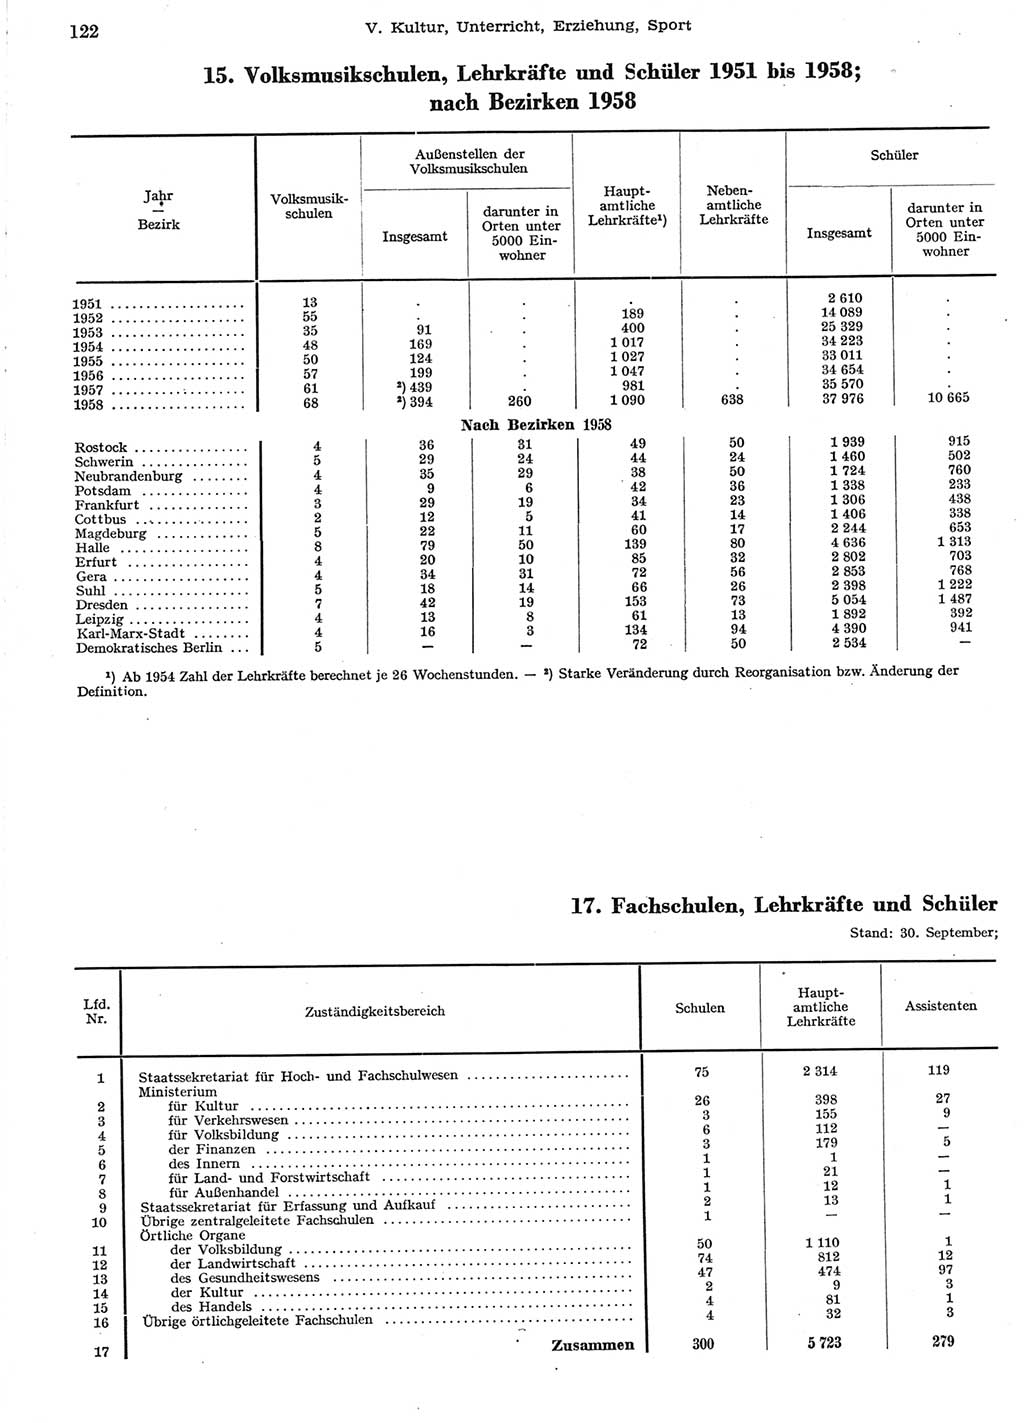 Statistisches Jahrbuch der Deutschen Demokratischen Republik (DDR) 1958, Seite 122 (Stat. Jb. DDR 1958, S. 122)